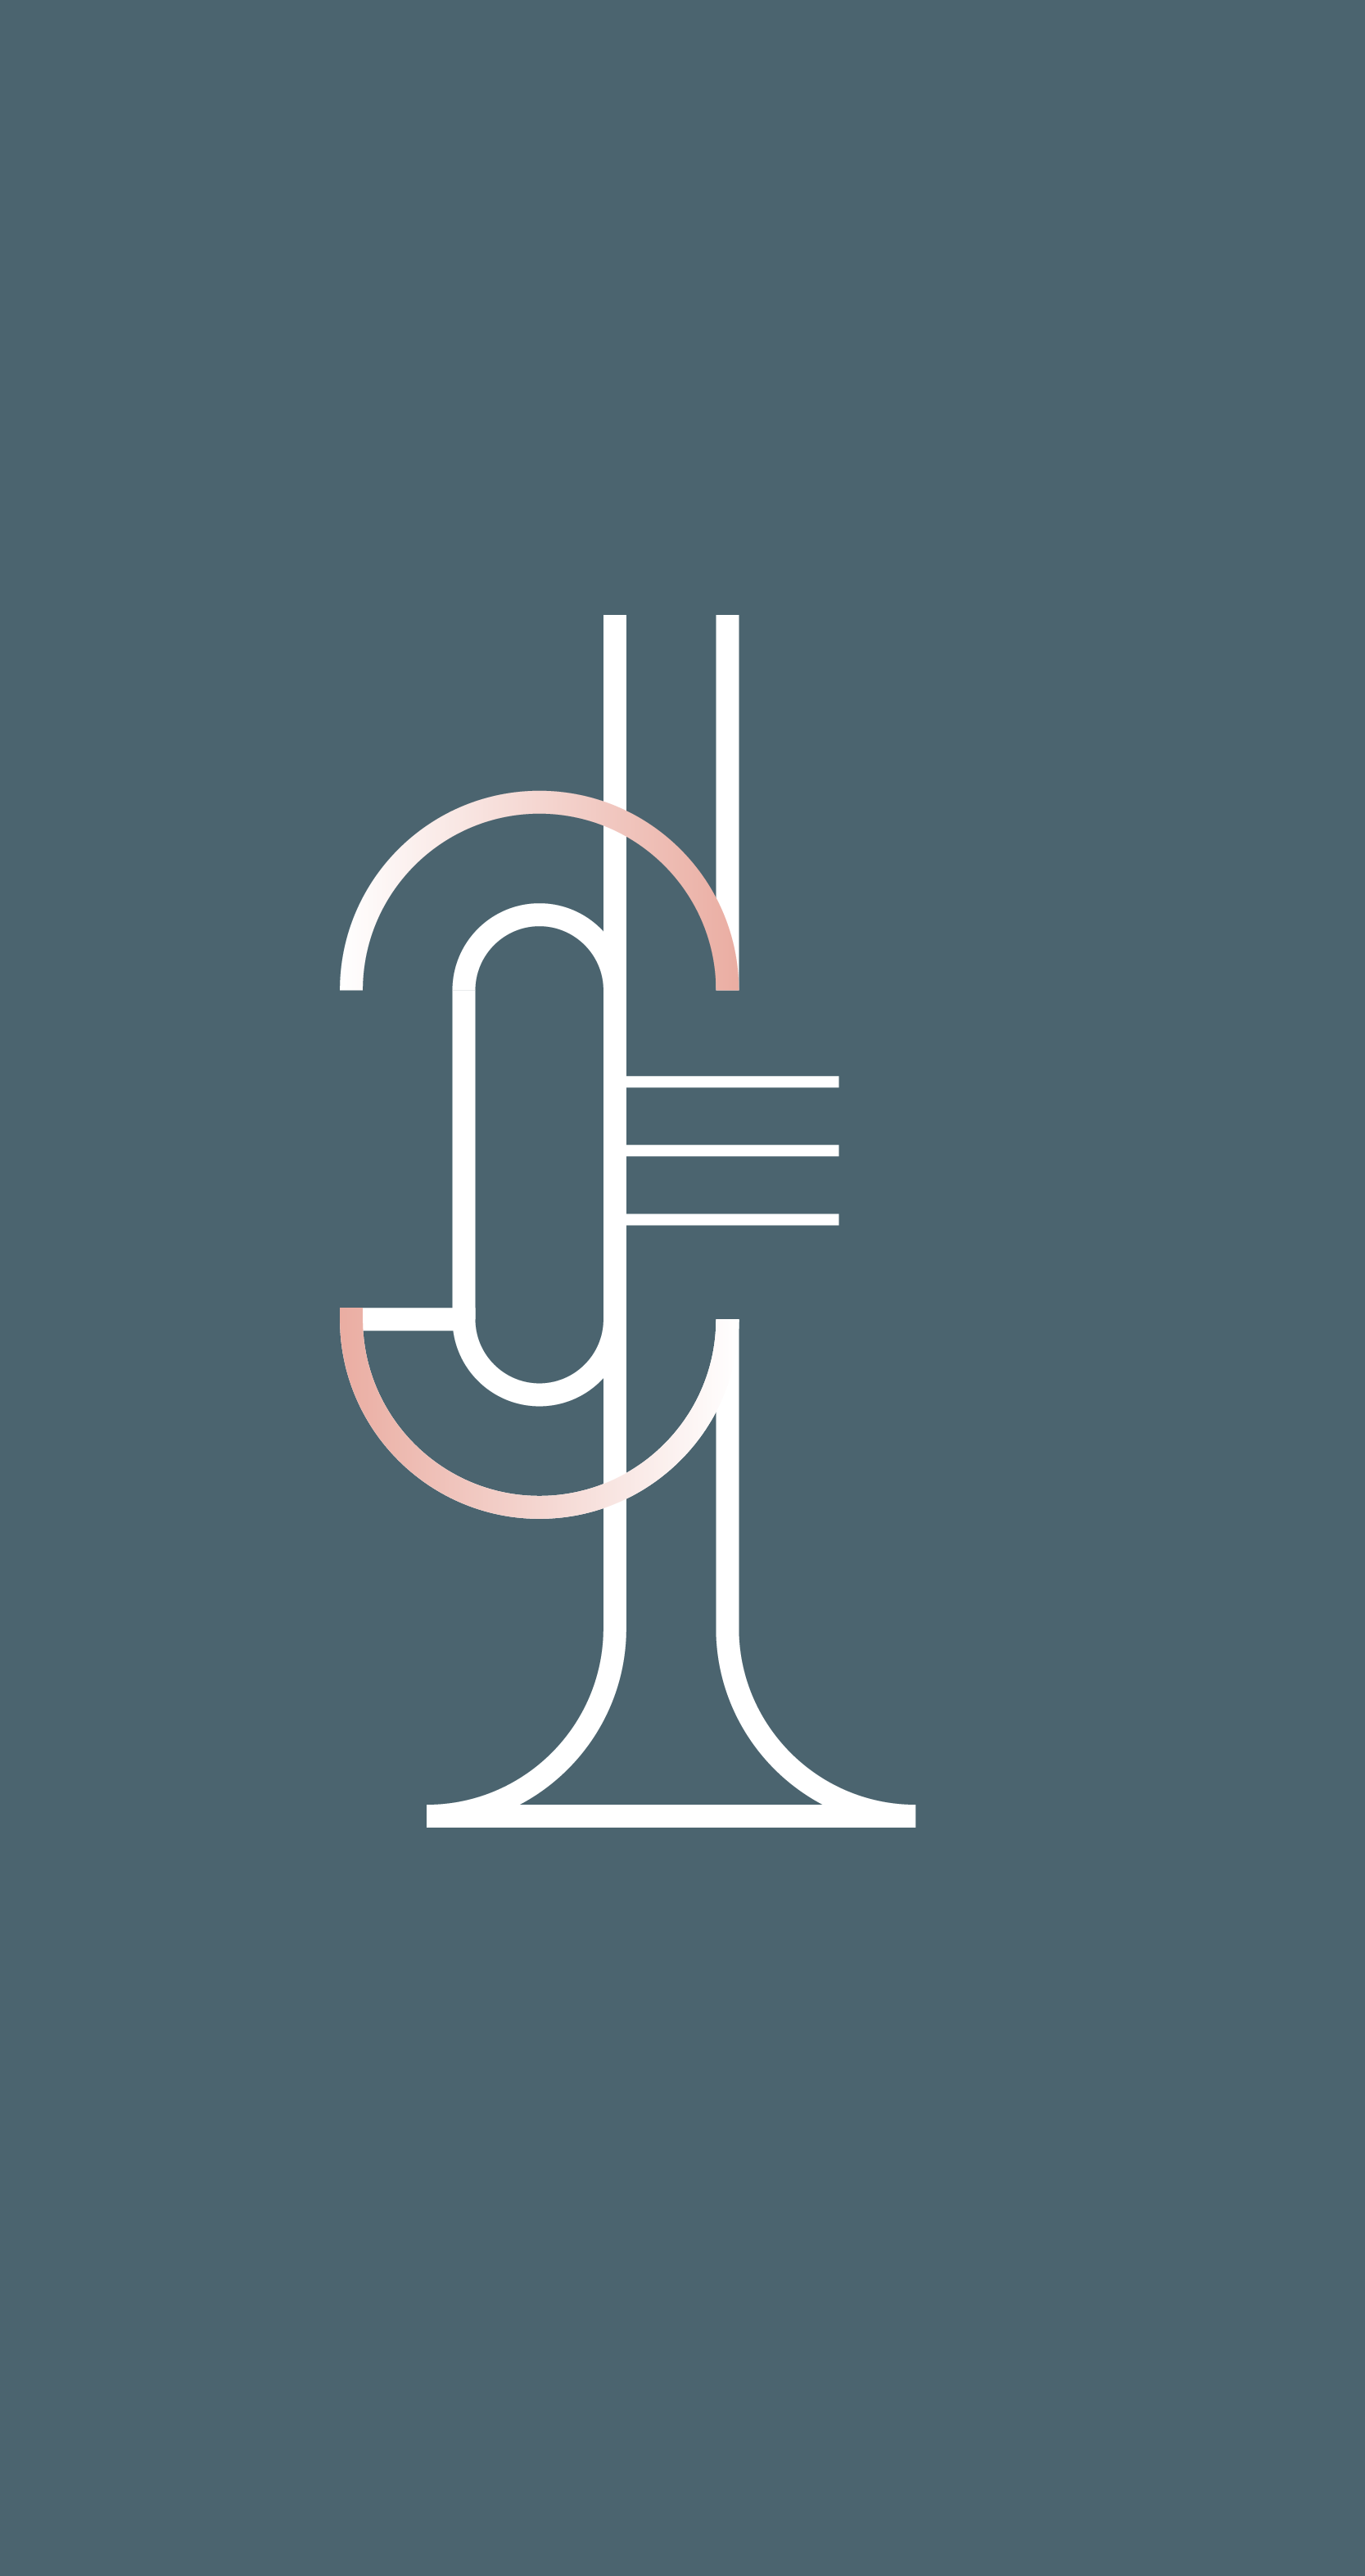 Graphic van een trompet in de huisstijl van Phion